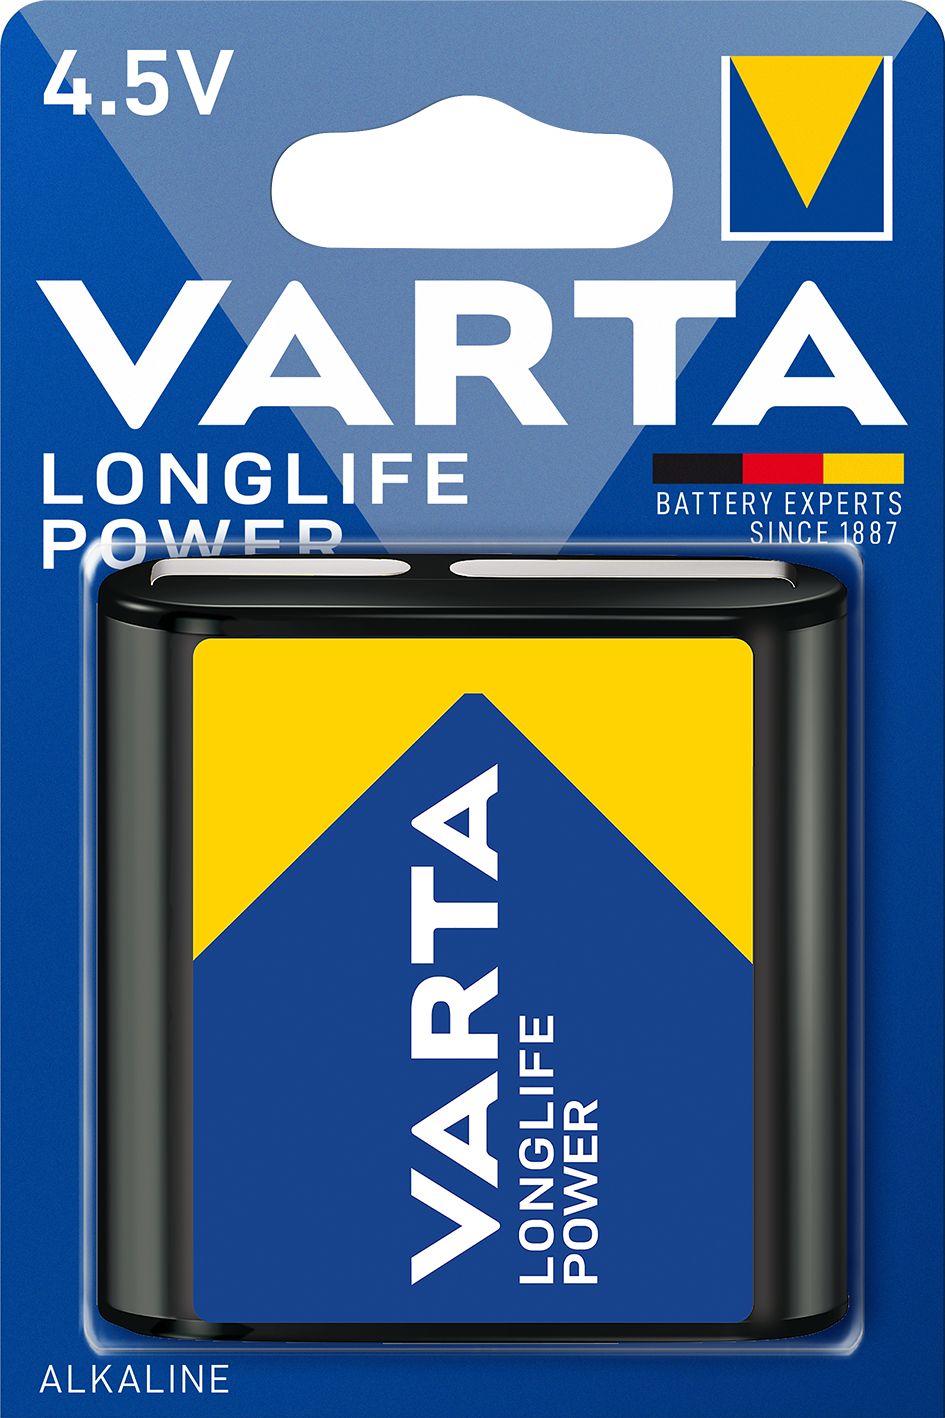 VARTA High Energy  - 1 pile alcaline - 3LR12 4,5V